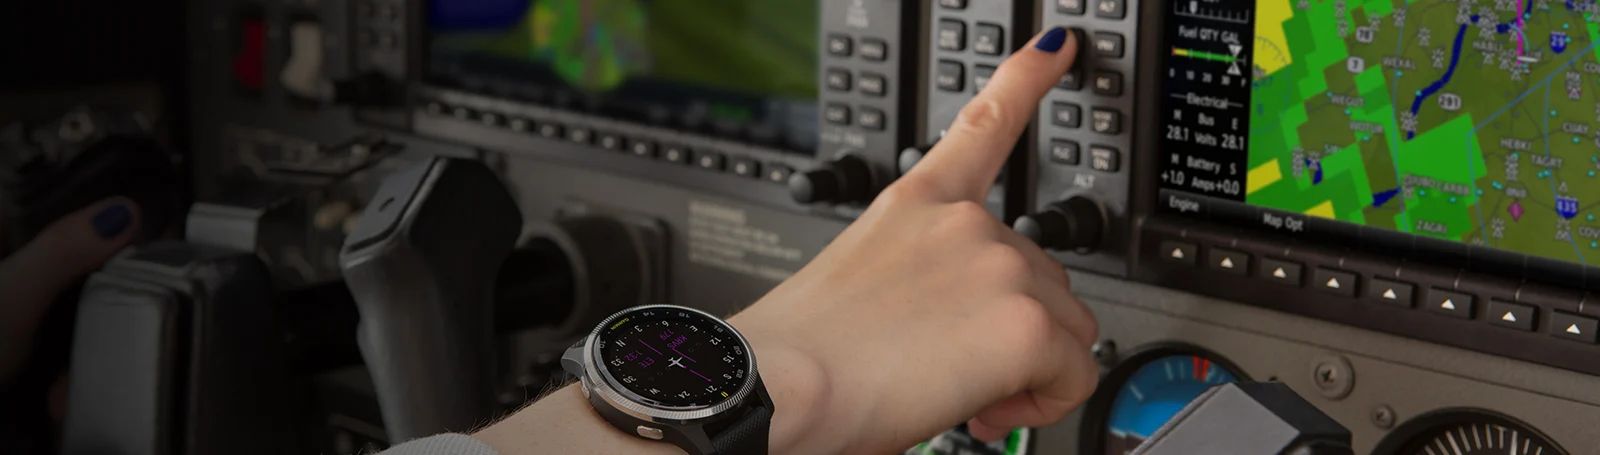 D2-Air-GPS-Garmin-Smartwatch-for-Aviators